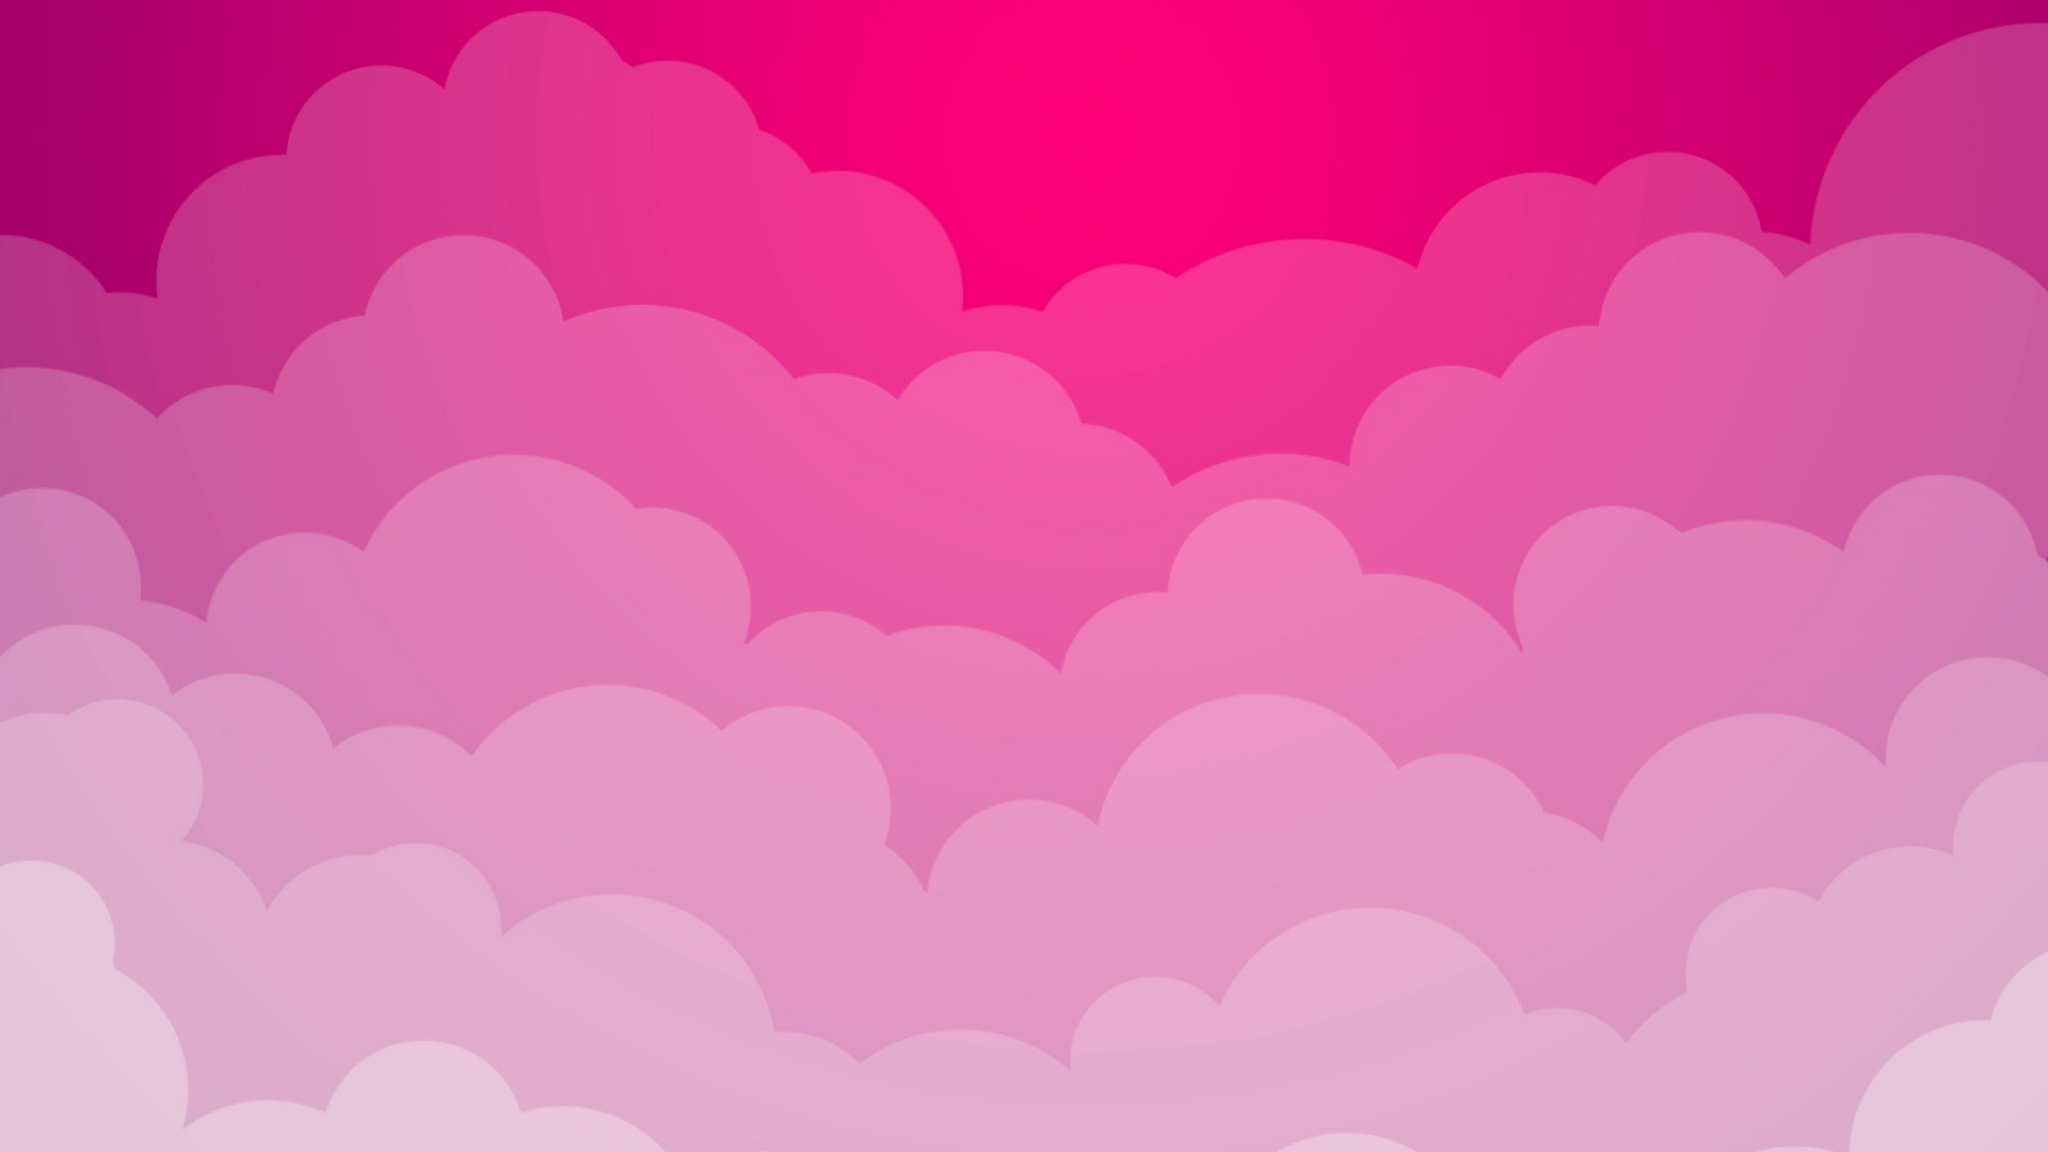 Màn hình nền với màu hồng mây trông thật dịu dàng và tươi sáng. Điểm nhấn đặc biệt của hình ảnh là hình dáng đầy sáng tạo của những đám mây trên nền màu hồng nhạt. Bạn không thể bỏ lỡ màn hình nền đẹp như thế này!